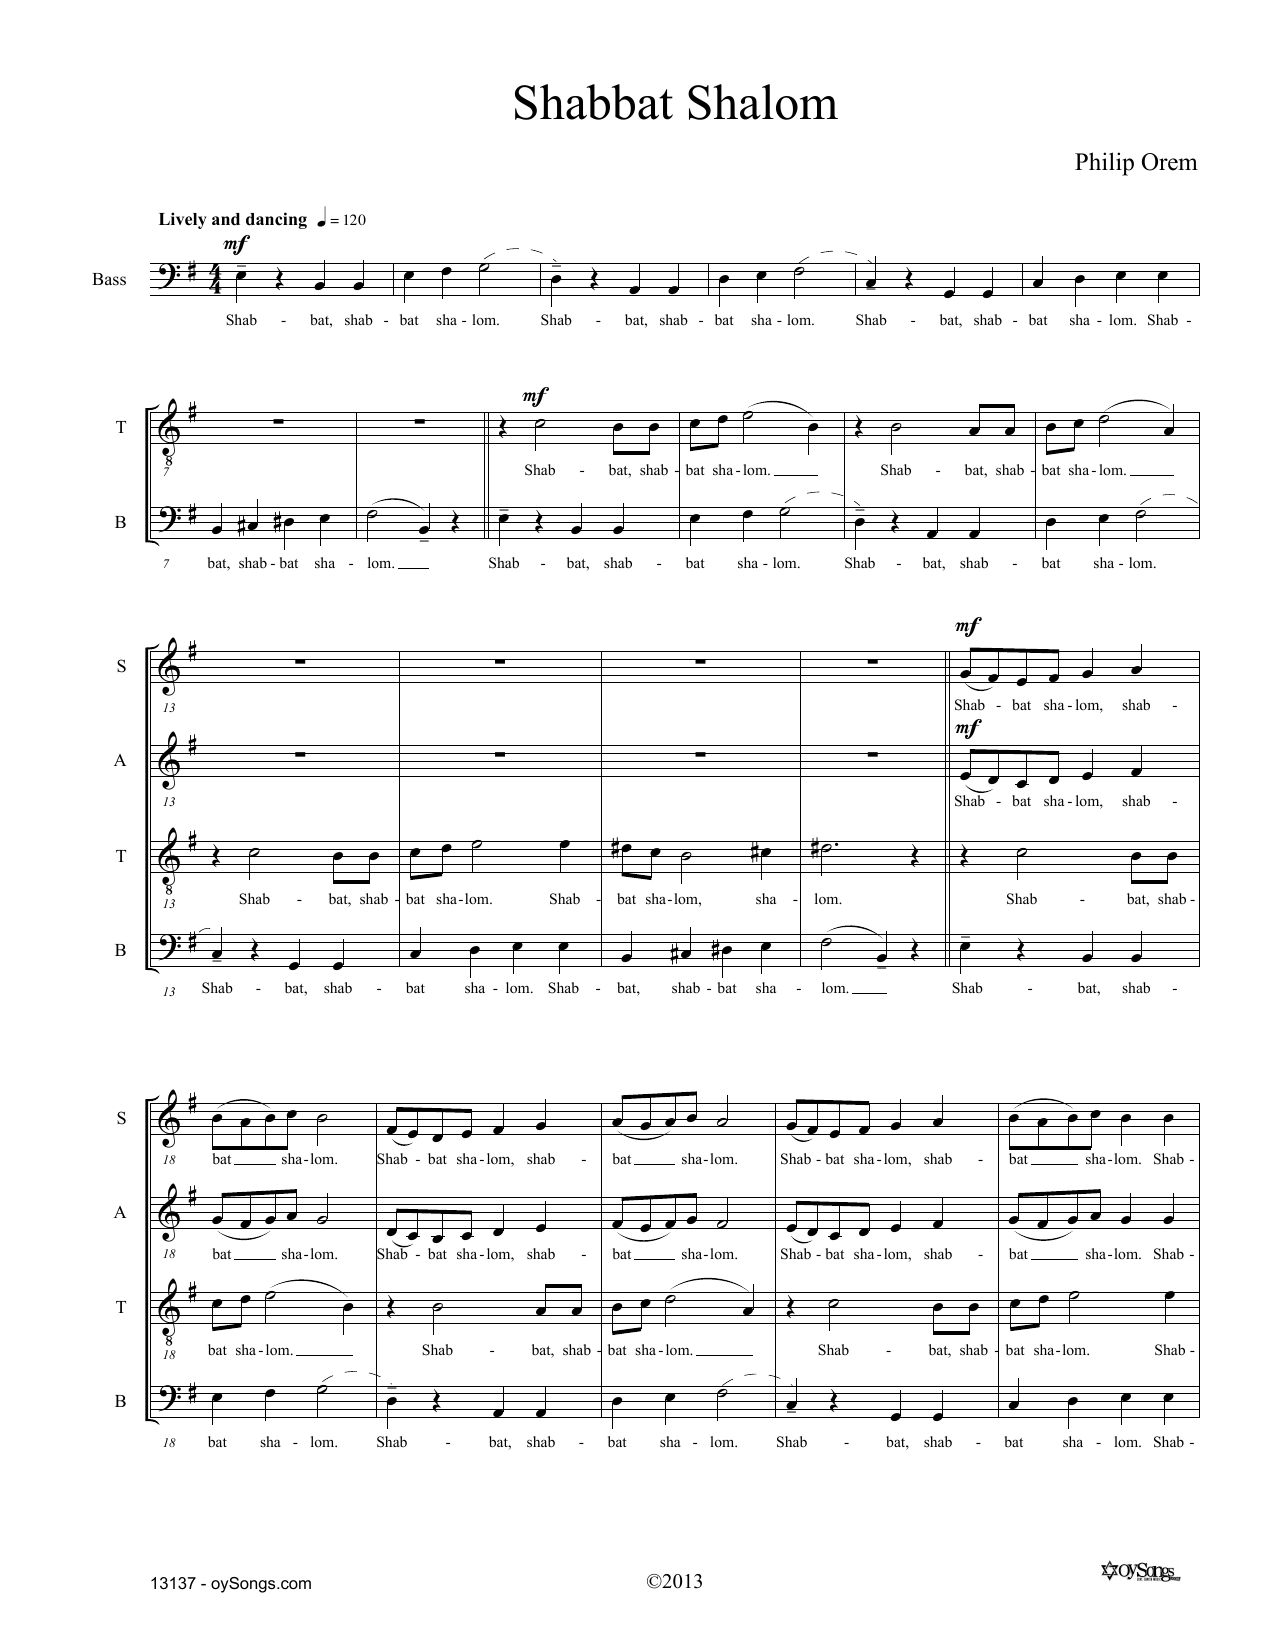 Philip Orem Shabbat Shalom Sheet Music Notes & Chords for SATB Choir - Download or Print PDF